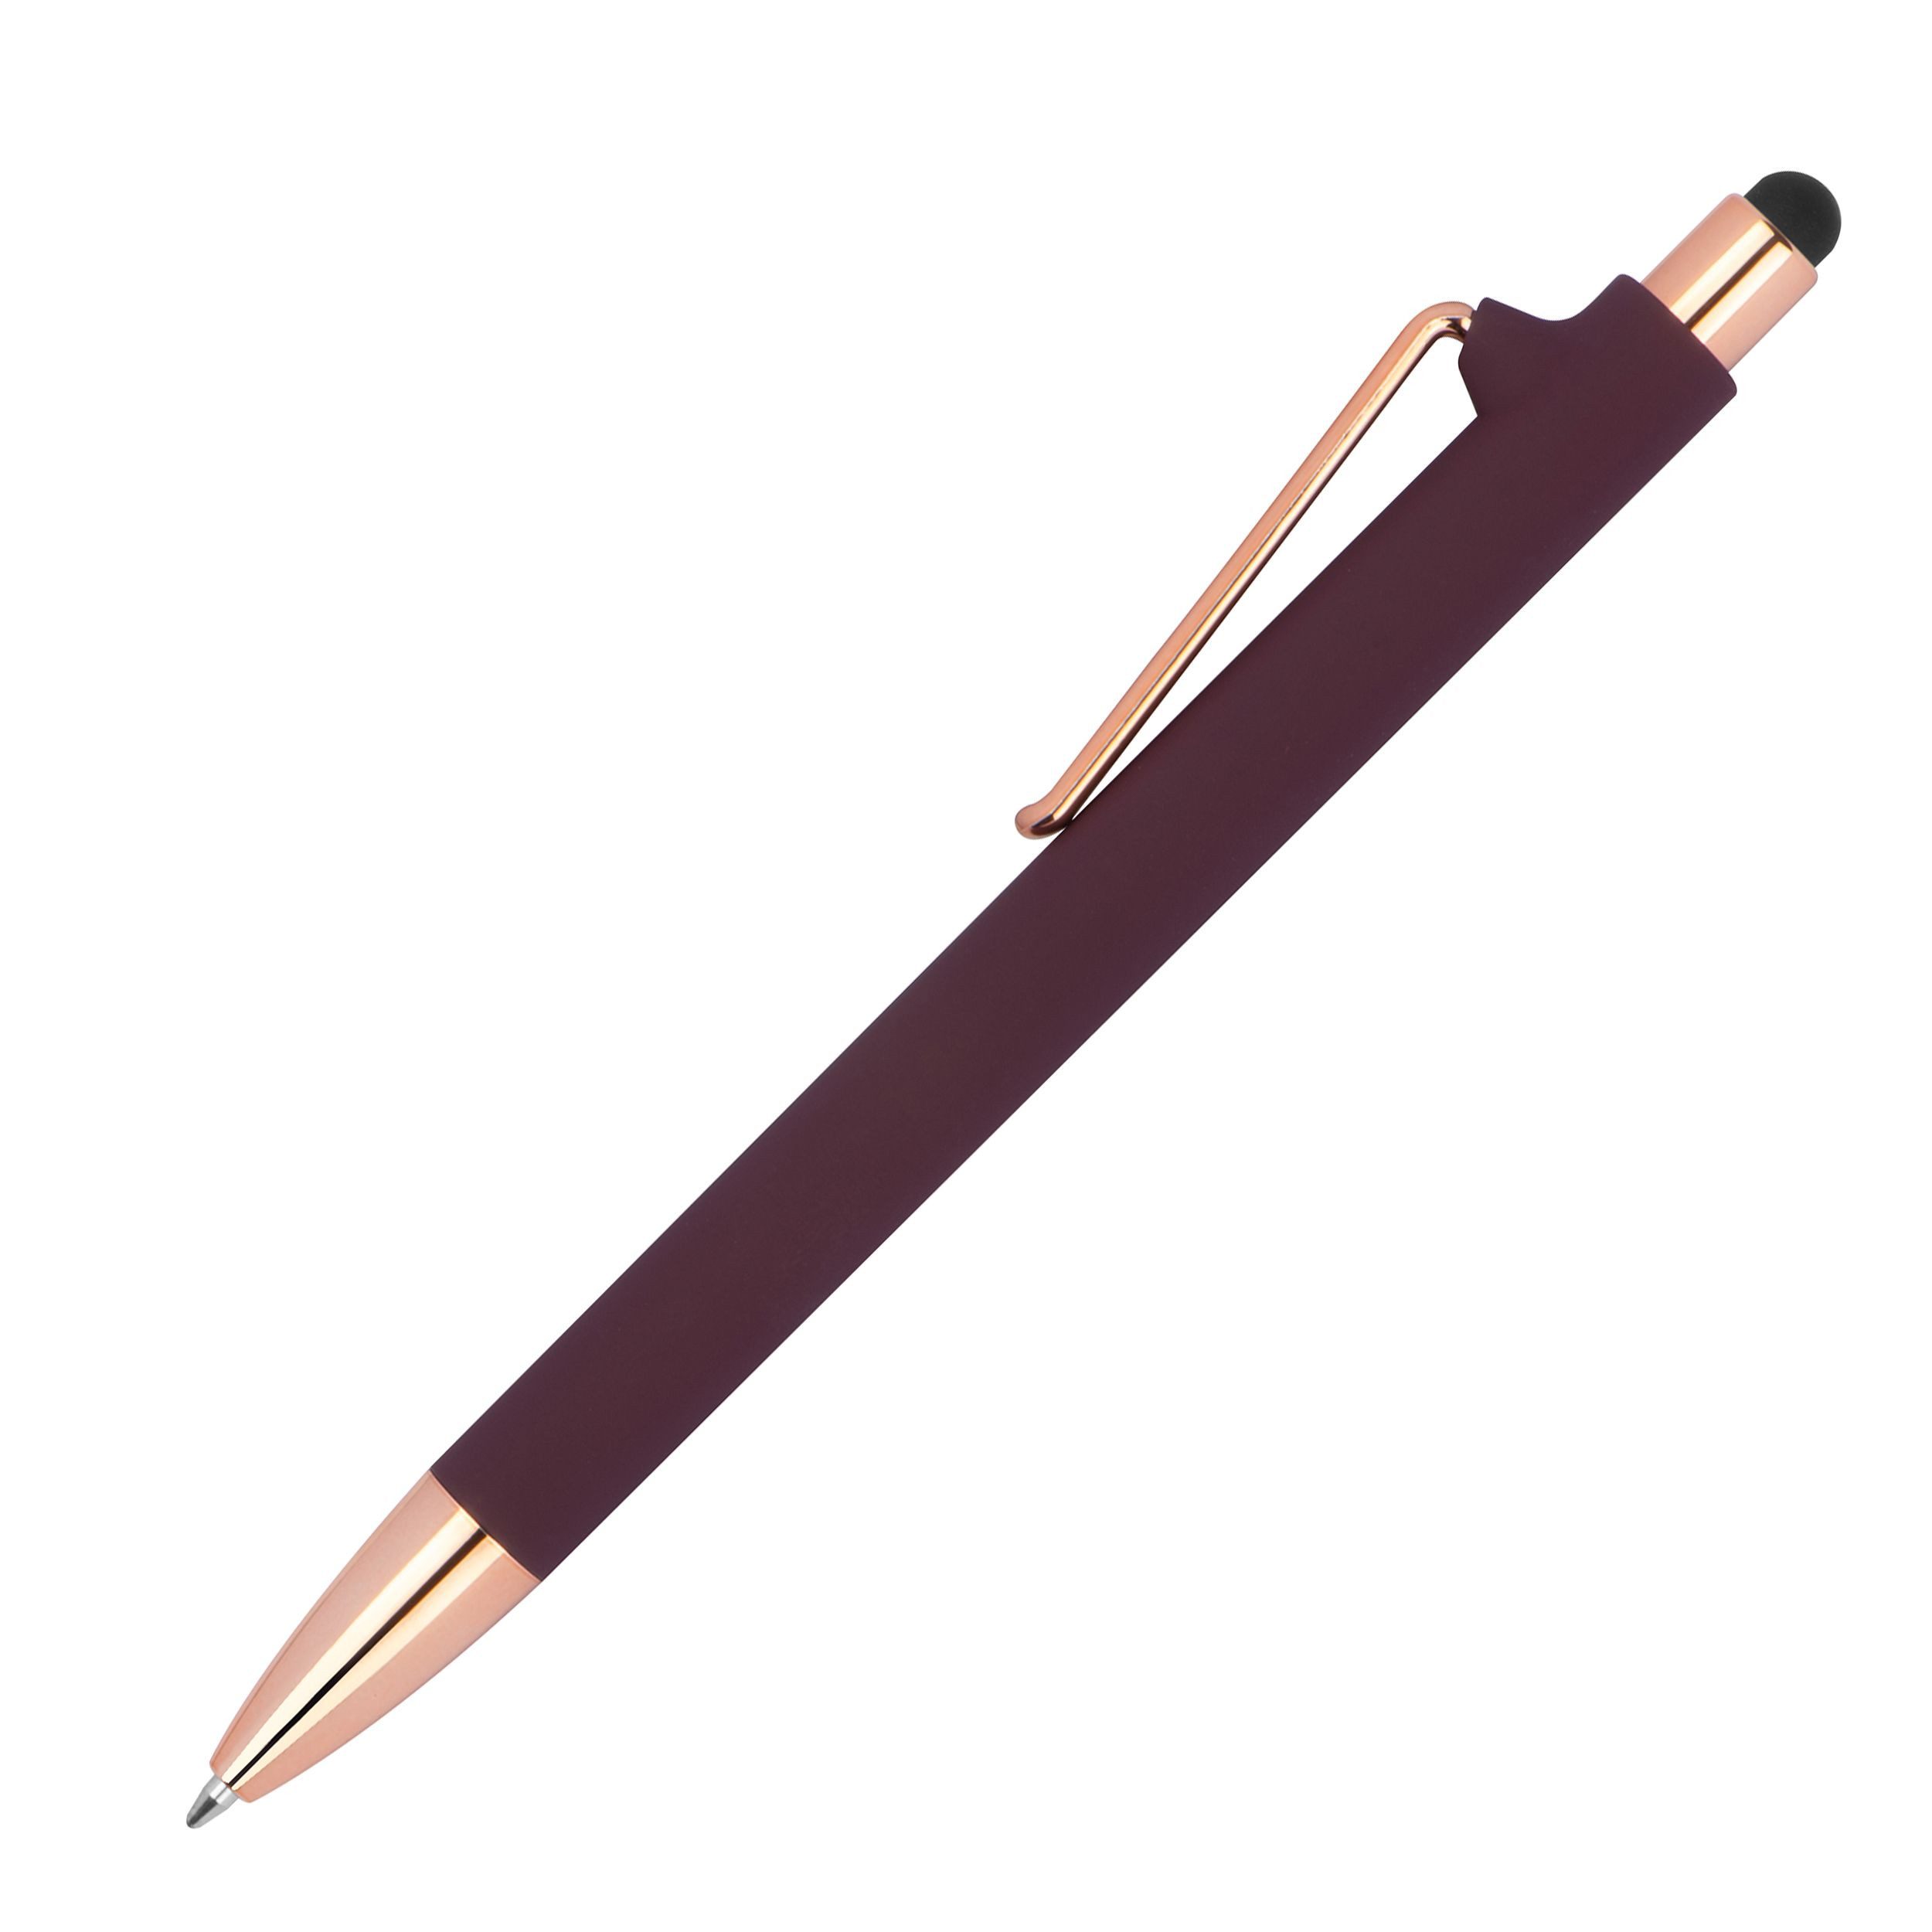 Livepac Office Kugelschreiber 10 Touchpen-Kugelschreiber aus Metall / gummiert / Farbe: roségold-bor